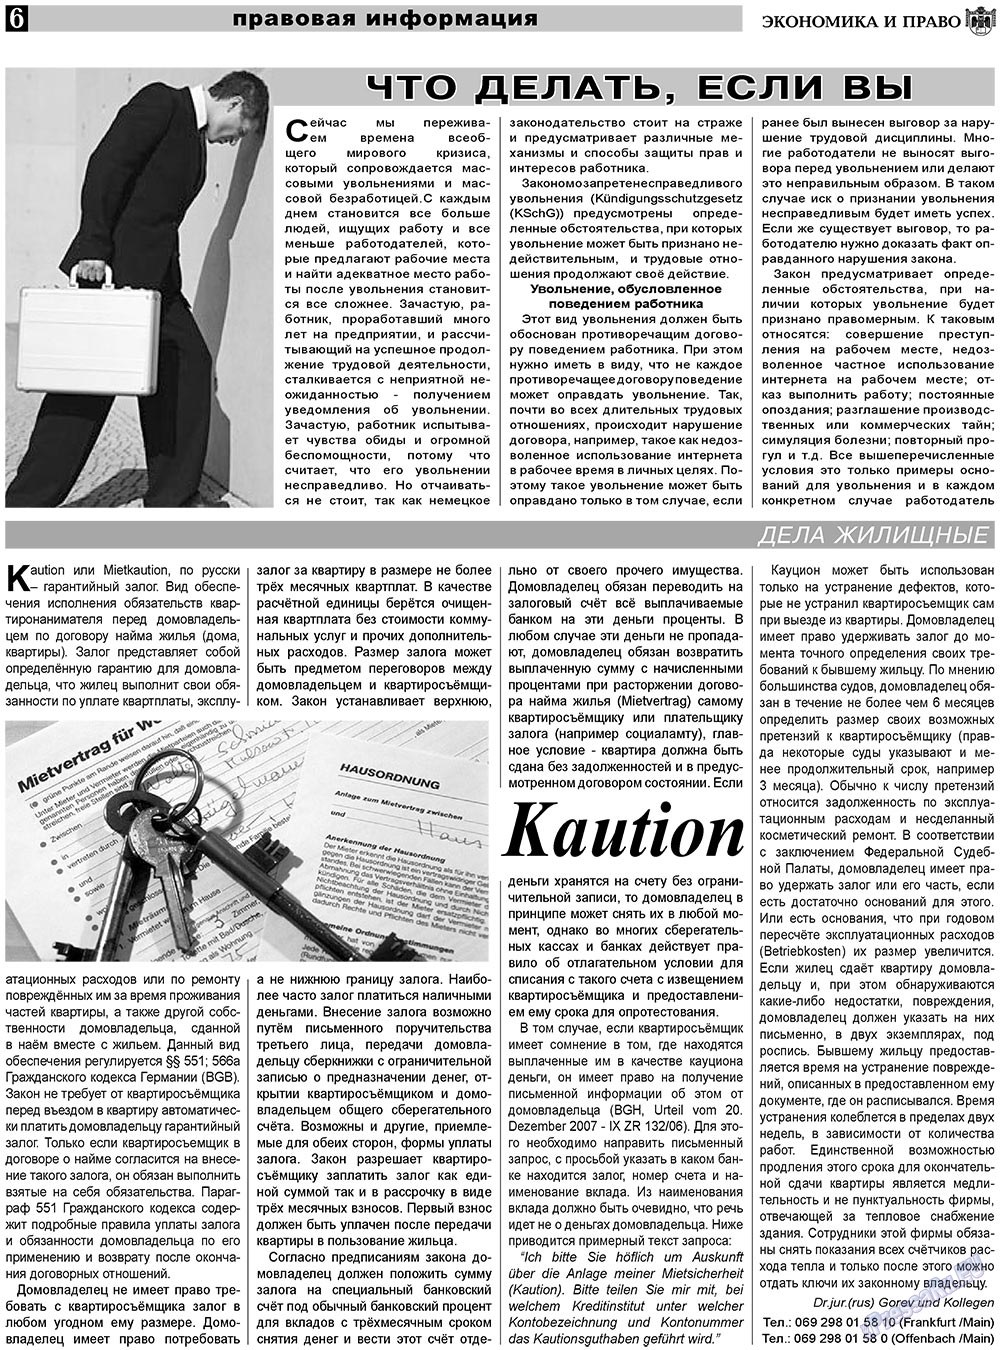 Экономика и право, газета. 2010 №11 стр.6